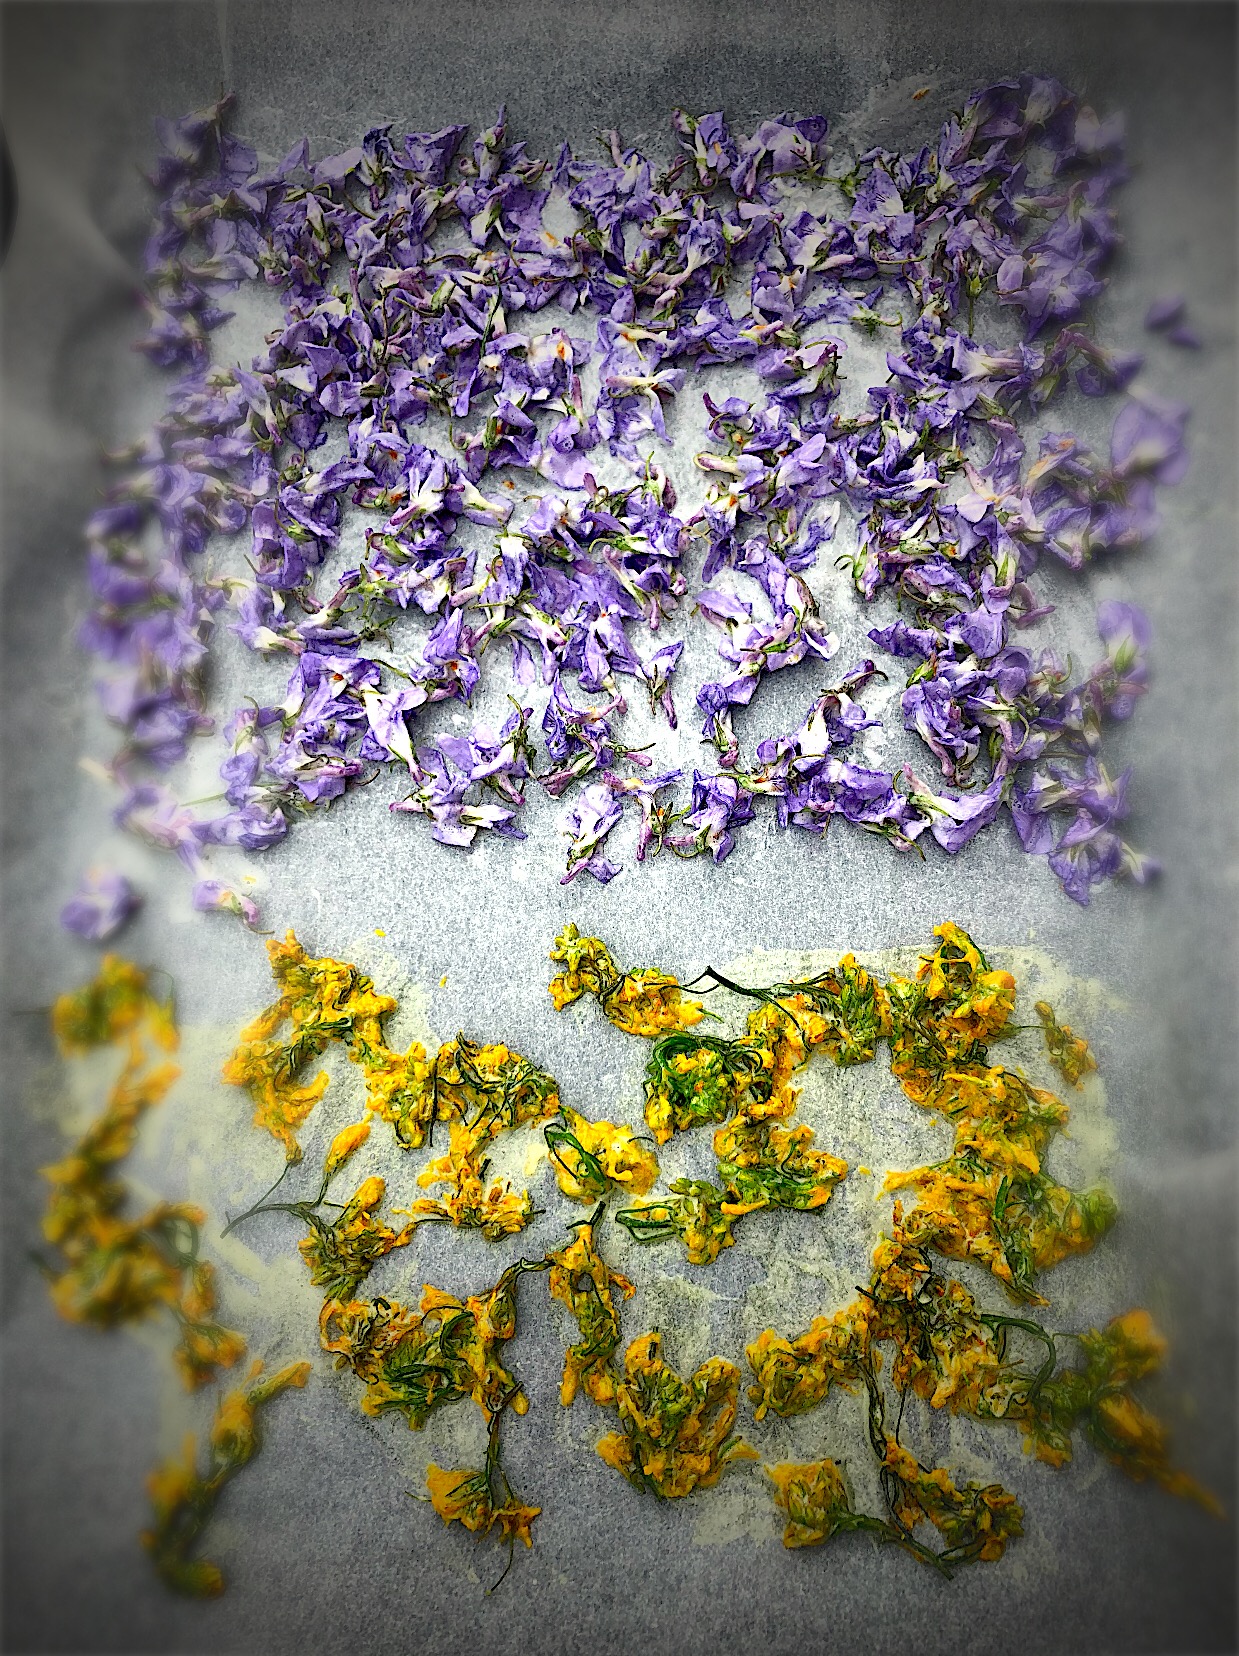 すみれの花の砂糖漬け 菫 スミレ 菜の花 お花見パーティーグランプリ18 ヤマサ醤油株式会社